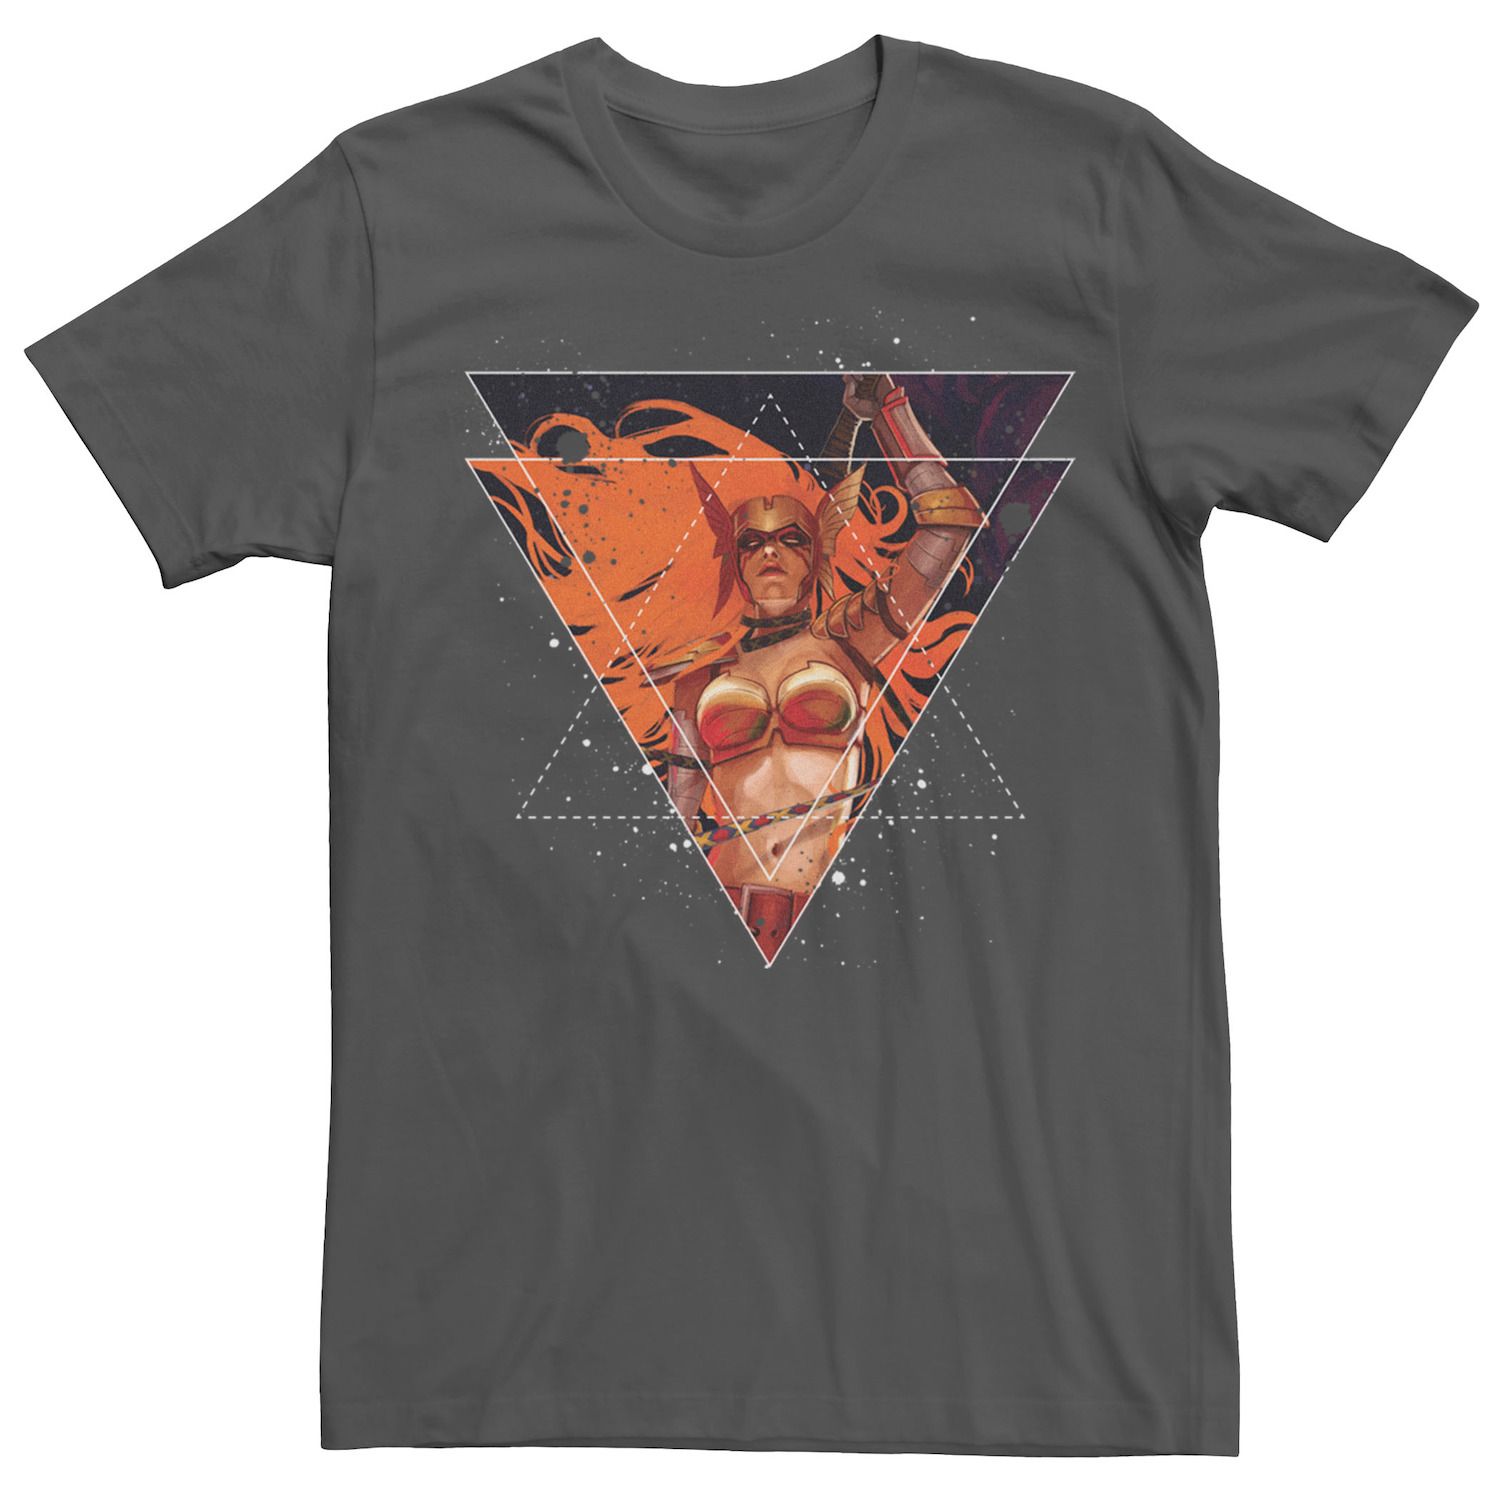 Мужская футболка с треугольным рисунком Marvel Angela Guardians of Galaxy